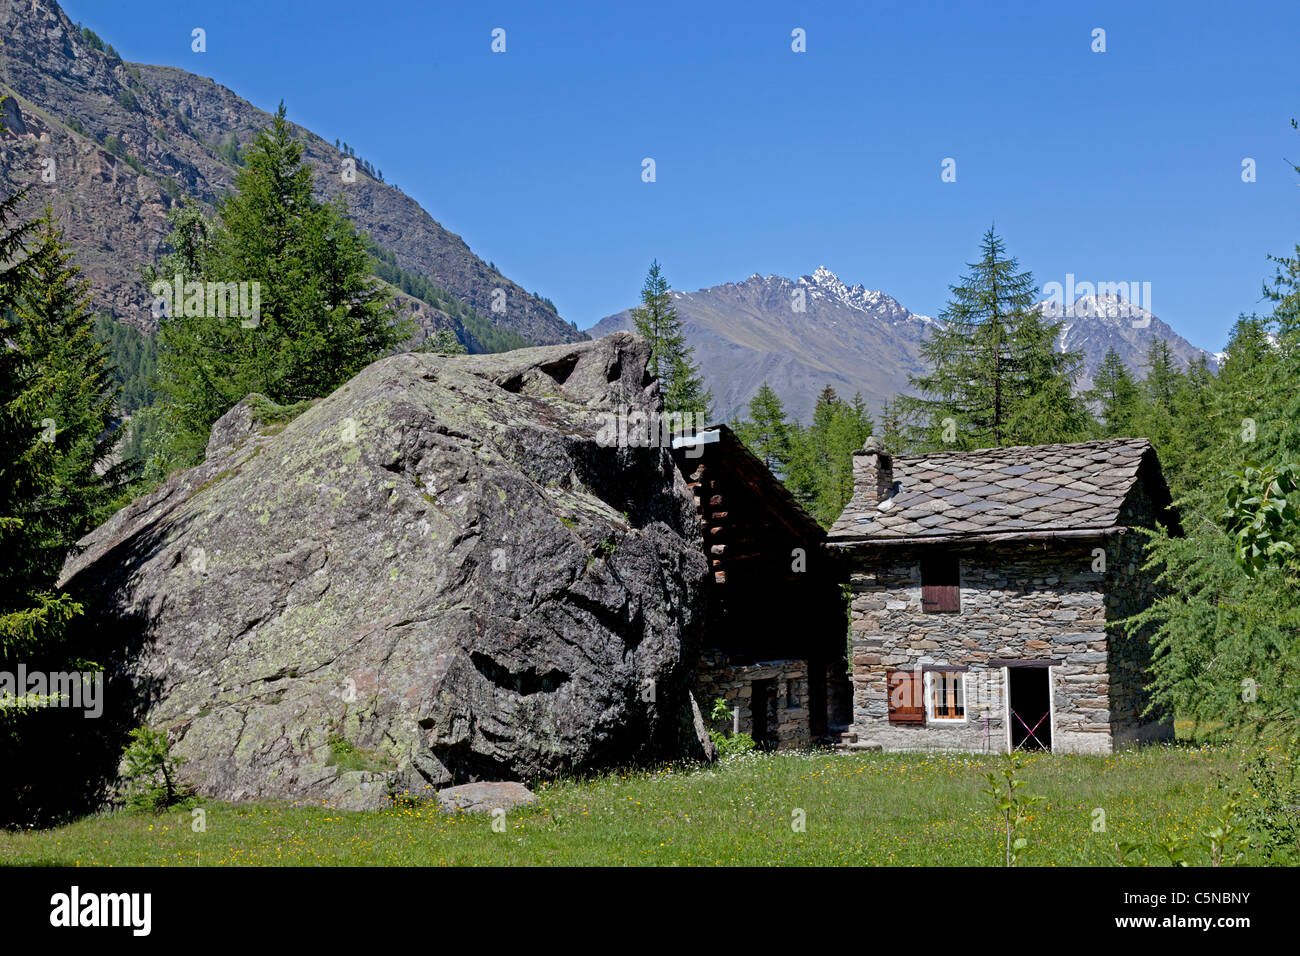 Der Kontrast zwischen ein kleines Haus mit einem großen Findling (Italien). Amusant Contraste Entre Une Maison et un Énorme Bloc Findling. Stockfoto